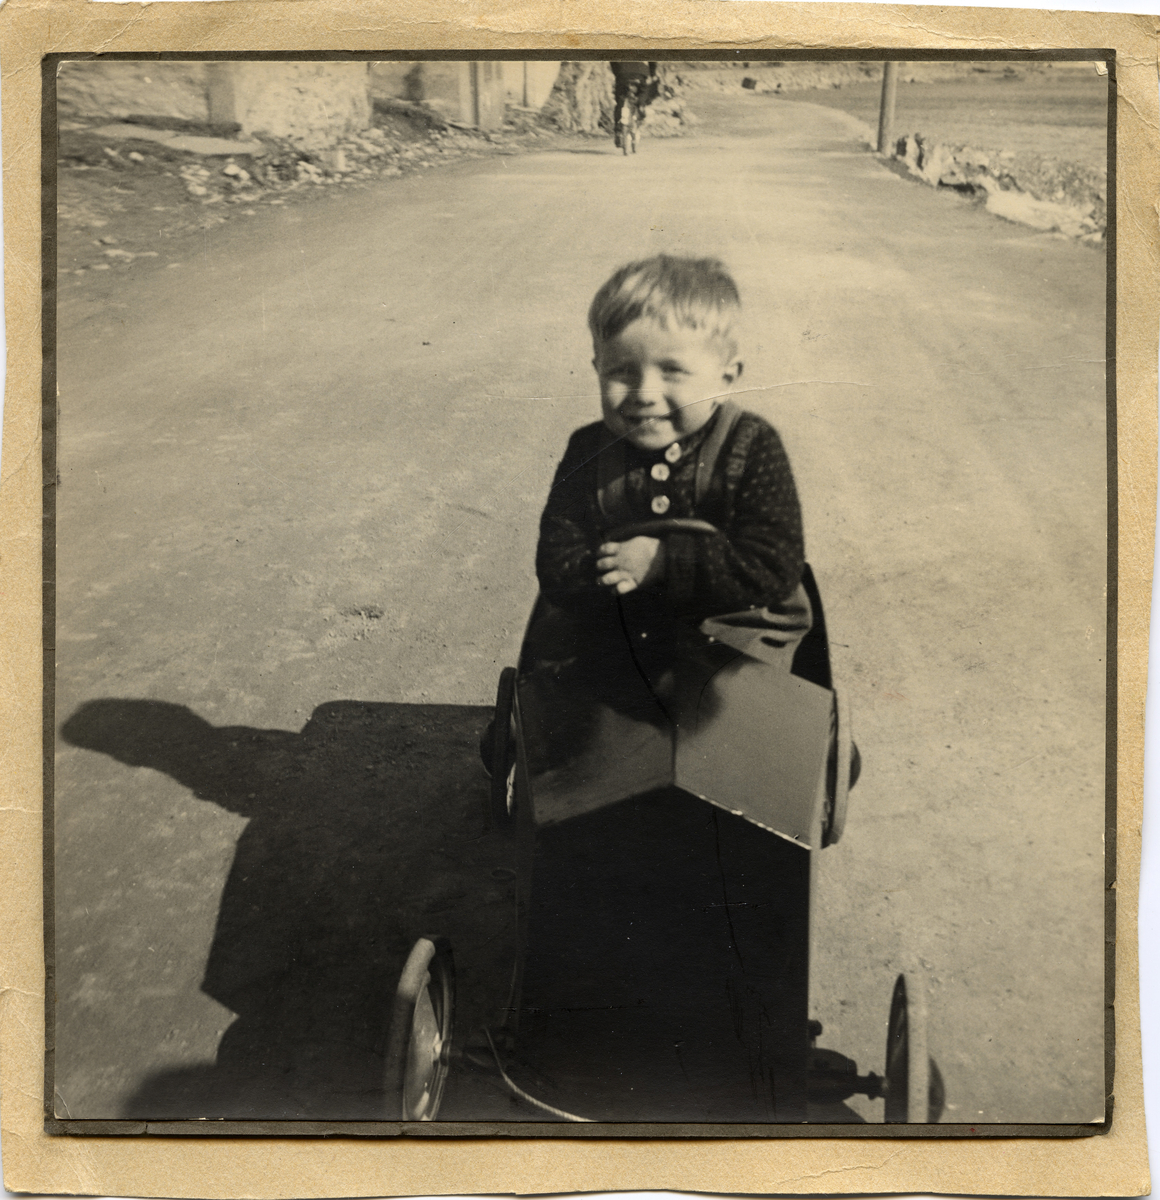 Femåringen Jan-Egil smiler stort mens han kjærer sin tråbil på Fuglenesveien i 1944.